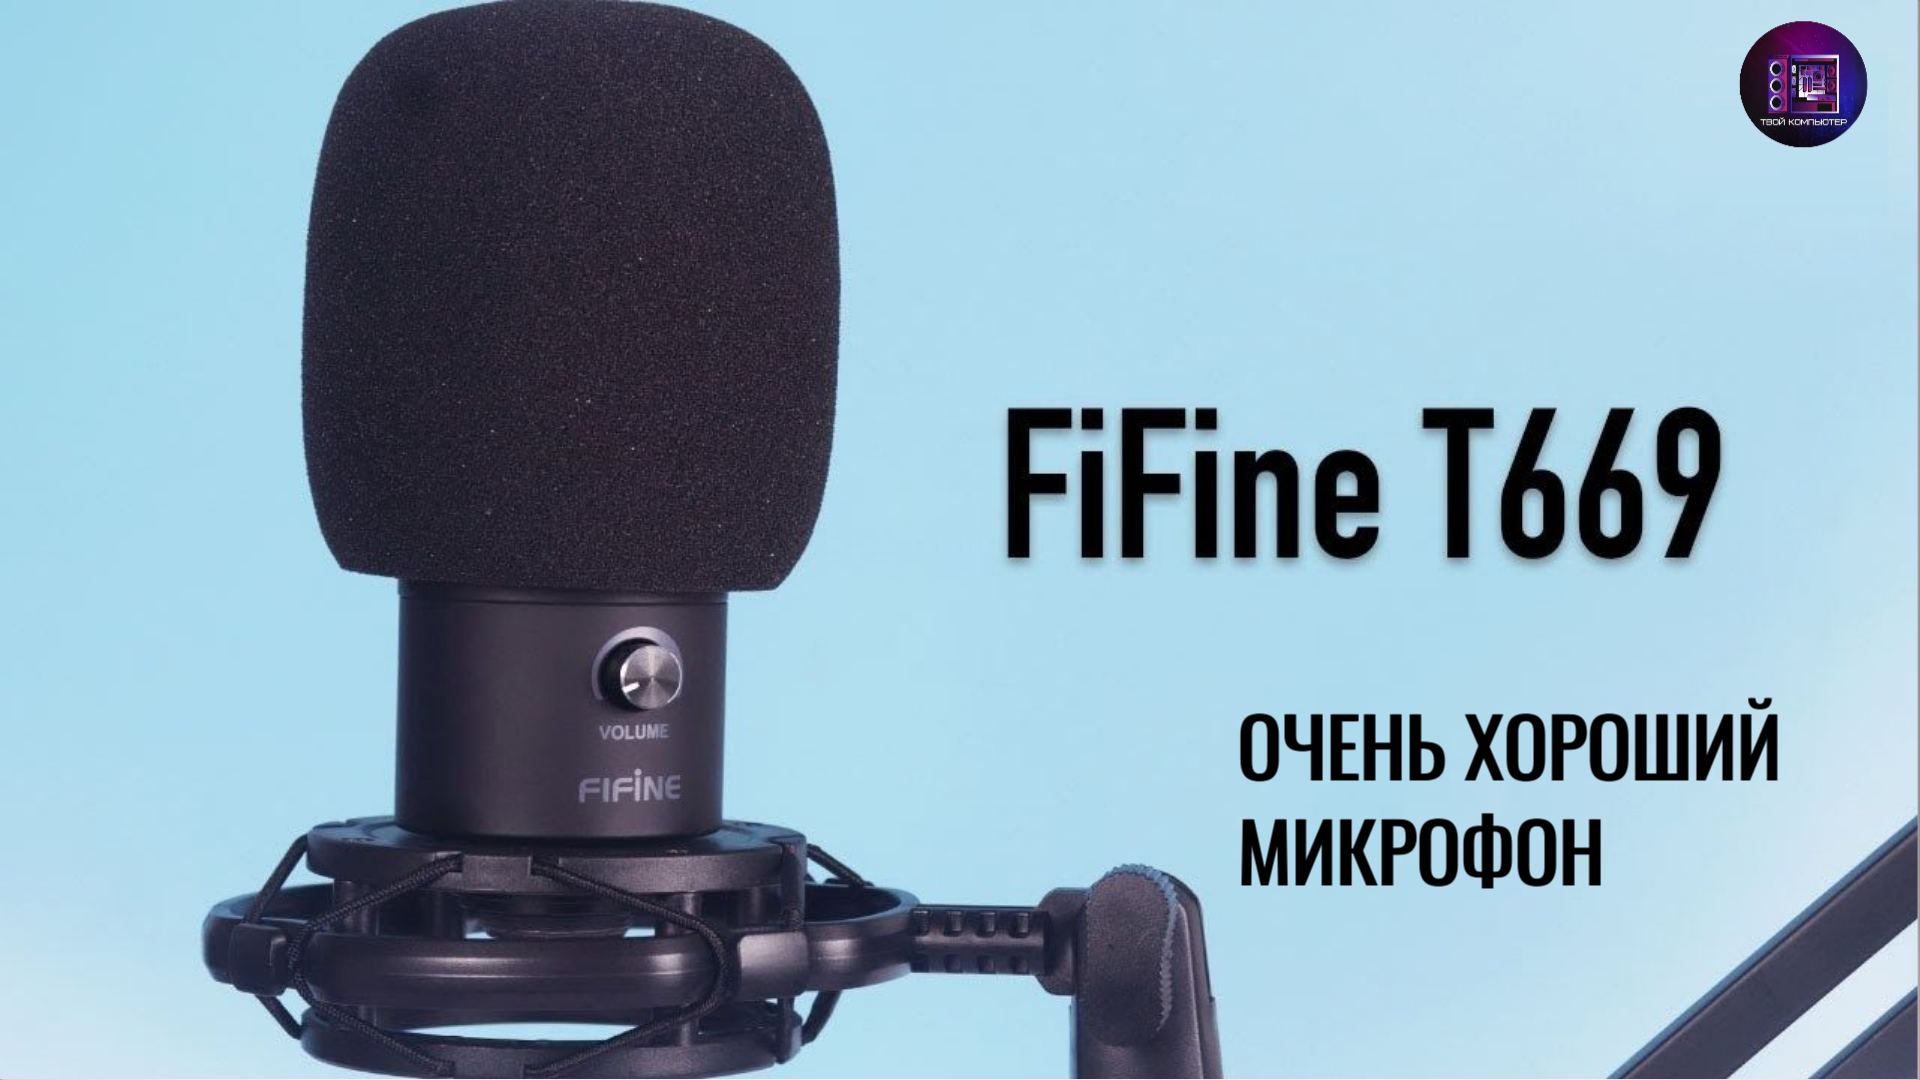 Микро fifine. Микрофон Fifine t669. Fifine t669 черный. Микрофон студийный Fifine t669. Микрофон Fifine t669 комплект.